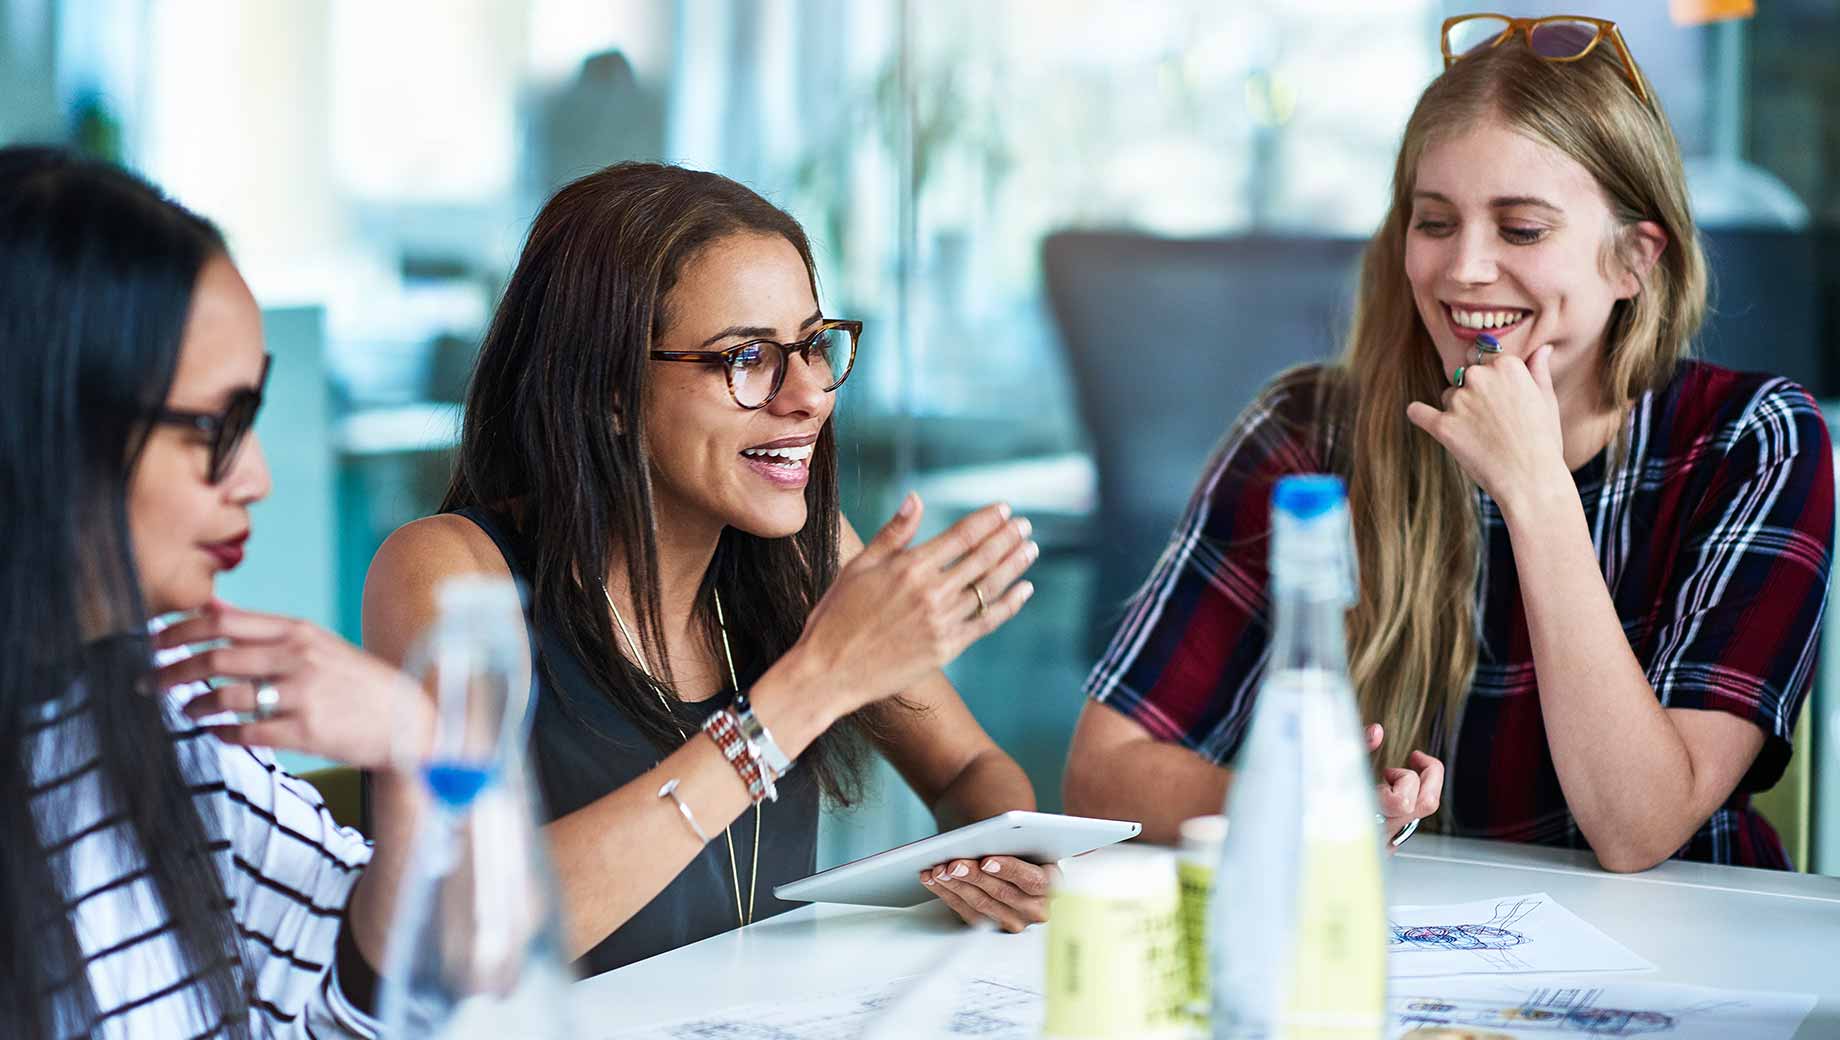 Женщины в коллективе едят. Что такое социальная подруга. Бизнес персона. Фото женский коллектив за столом 6 человек.